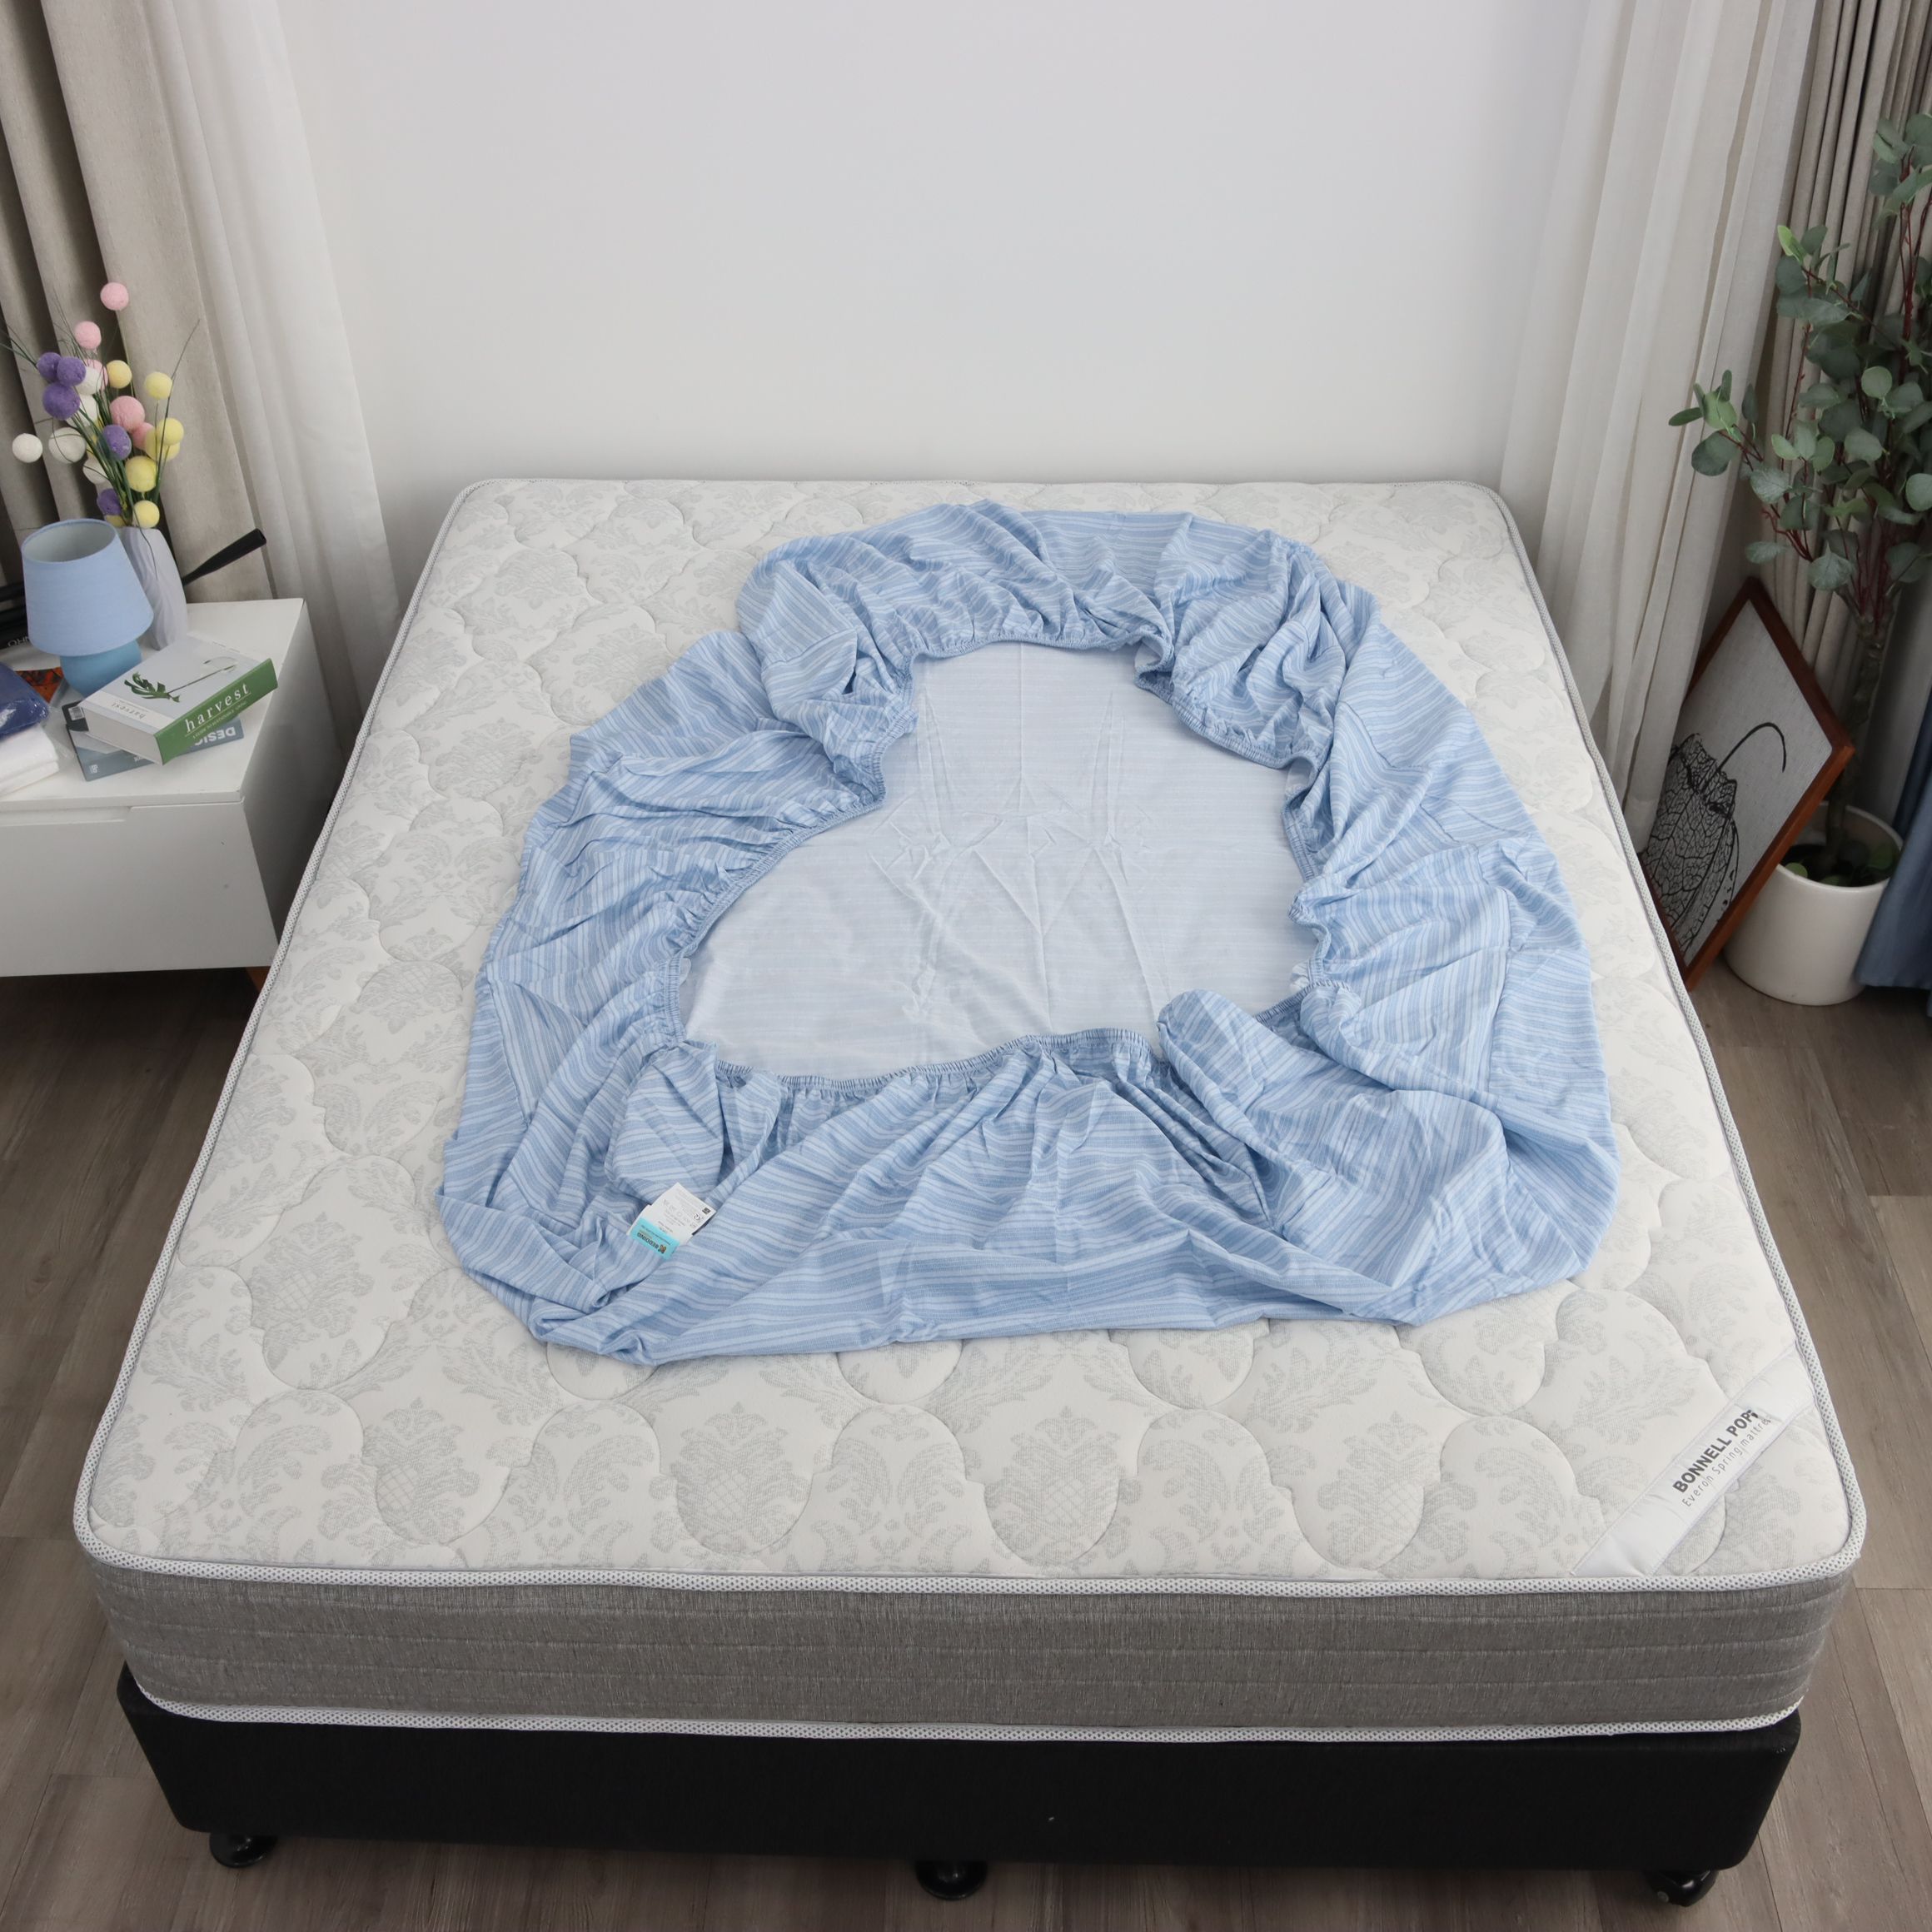 Bộ ga giường K-Bedding KMTP306 chất liệu Microtencel mềm mại, thoáng mát (KHÔNG BAO GỒM CHĂN)